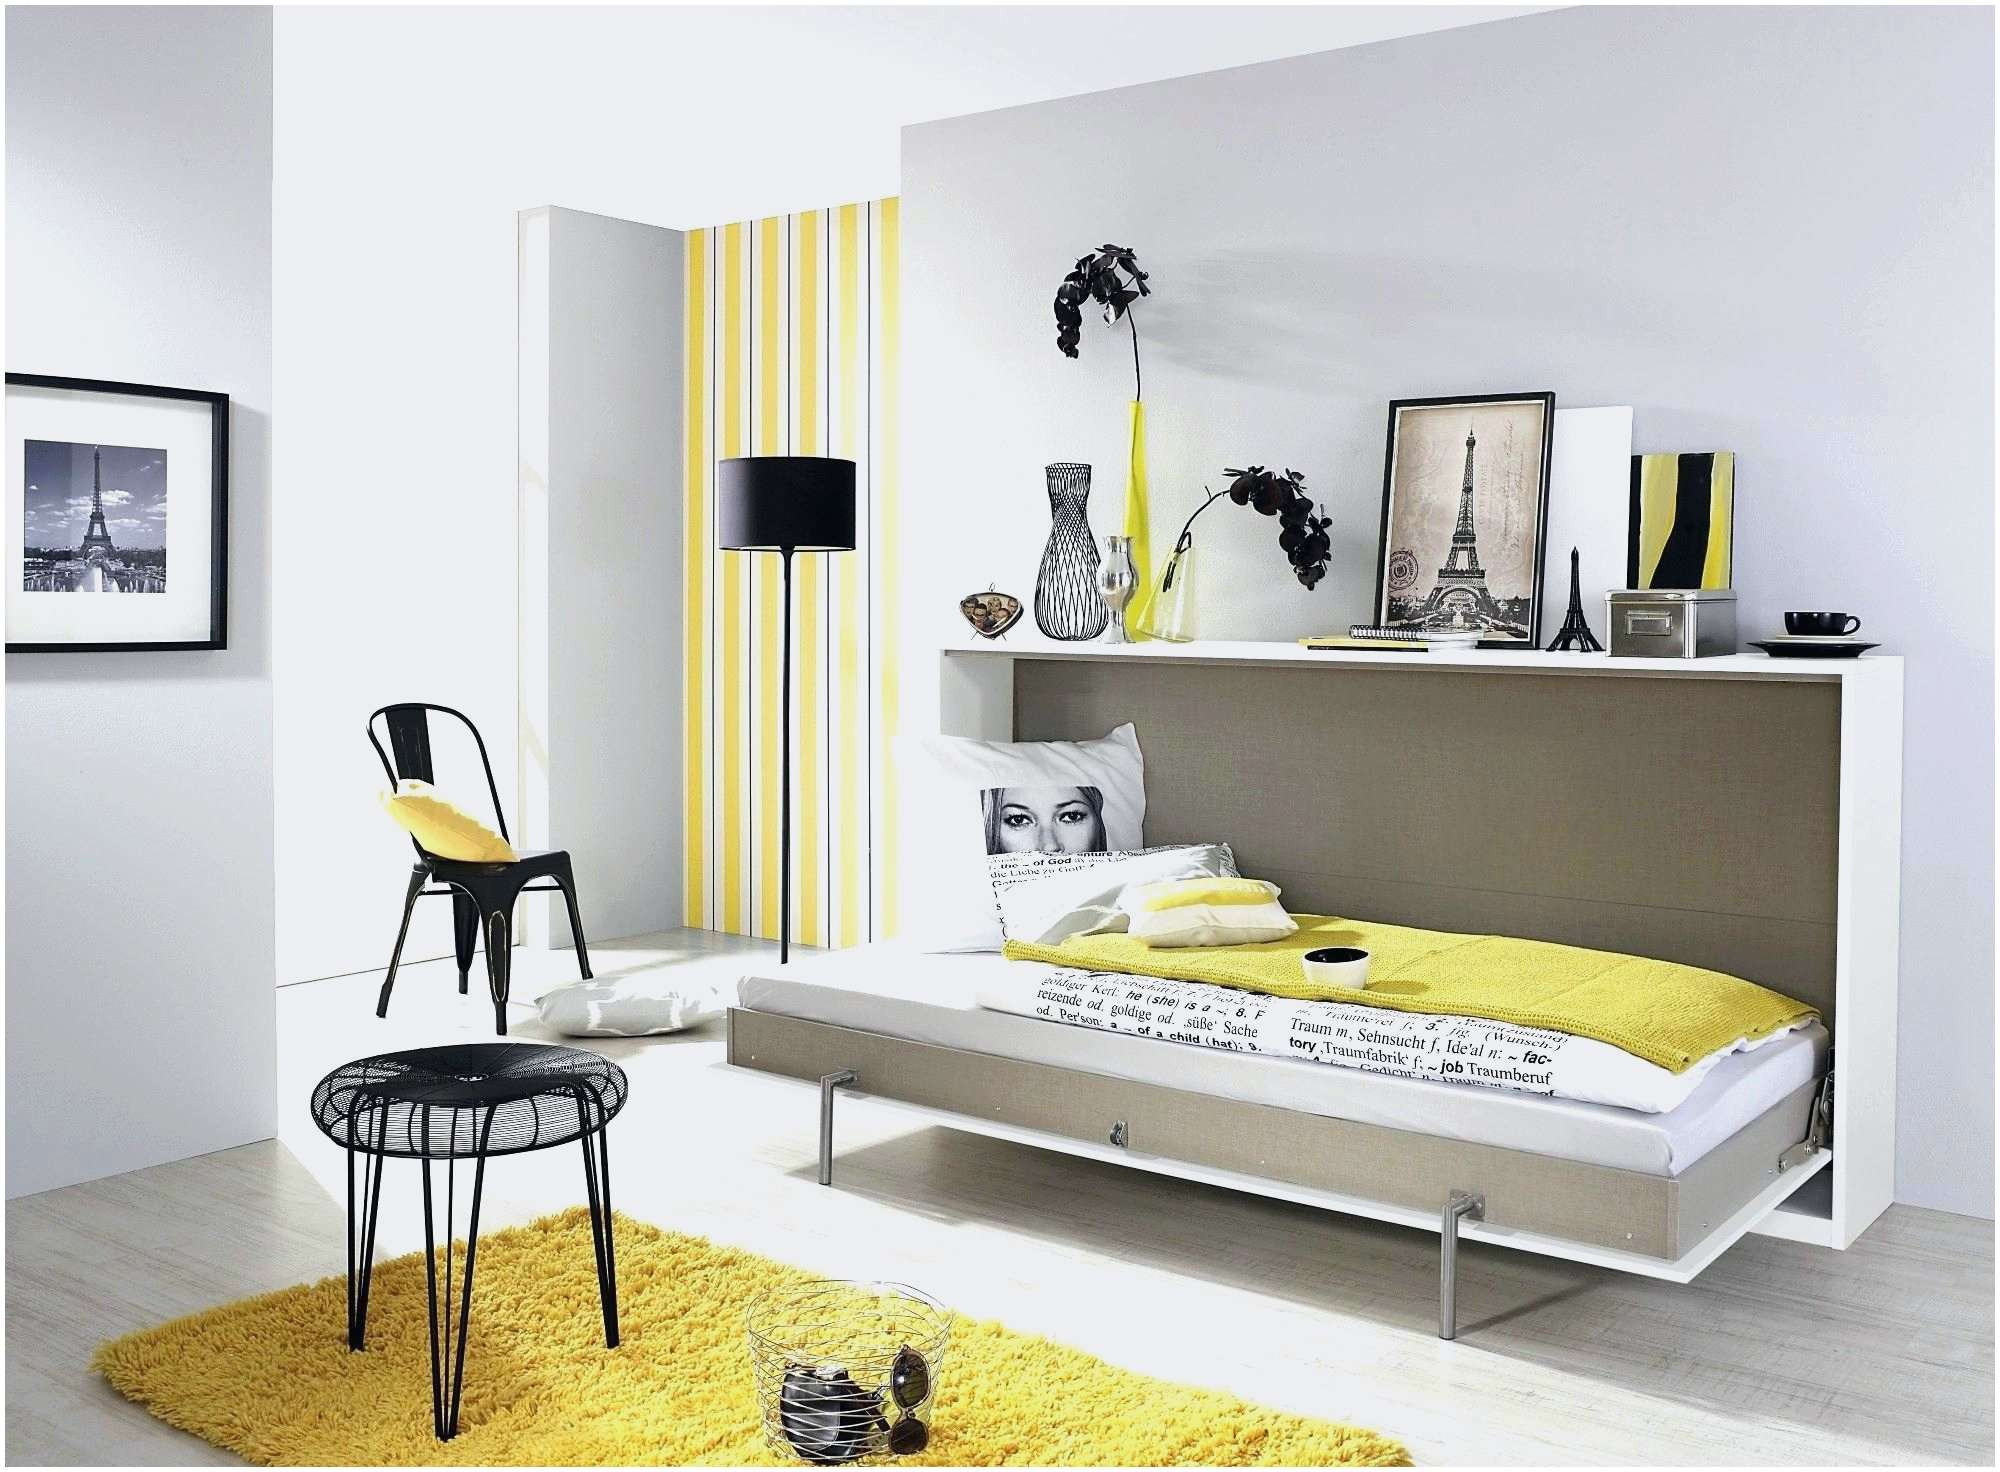 Magasin Canapé Angers Best Of Location Appartement Meublé Lille 93 Idées De Design